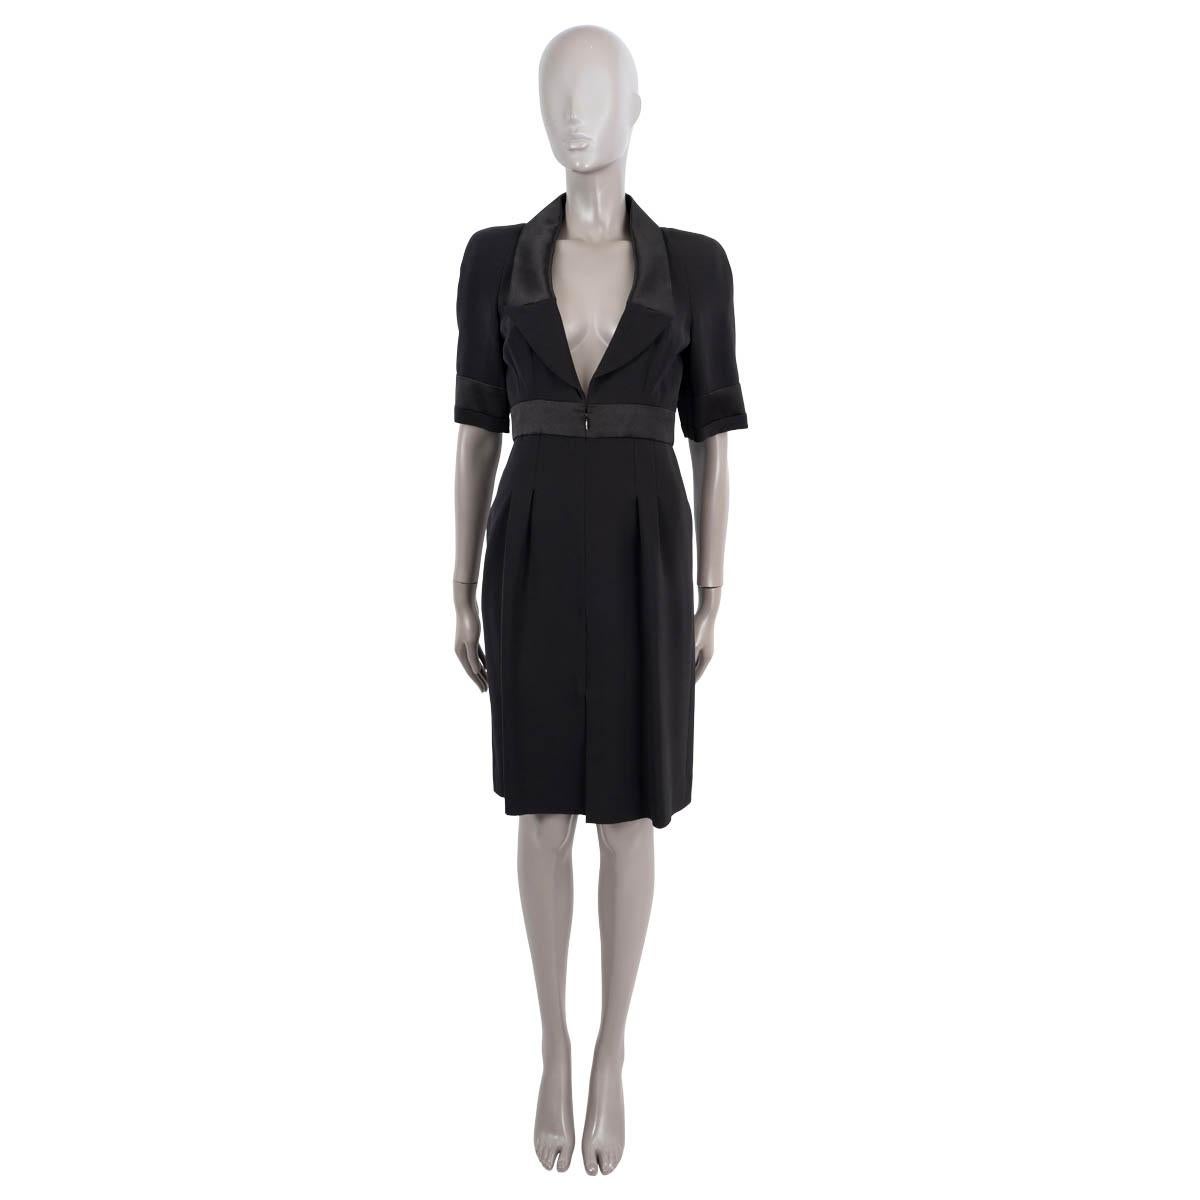 100% authentique Chanel robe à manches courtes en soie noire (avec 7% d'élasthanne) avec détails en satin. S'ouvre par une fermeture à glissière cachée sur le devant. Doublure en soie (100%). 

2007 Automne/Hiver

Mesures
Modèle	07A P31667